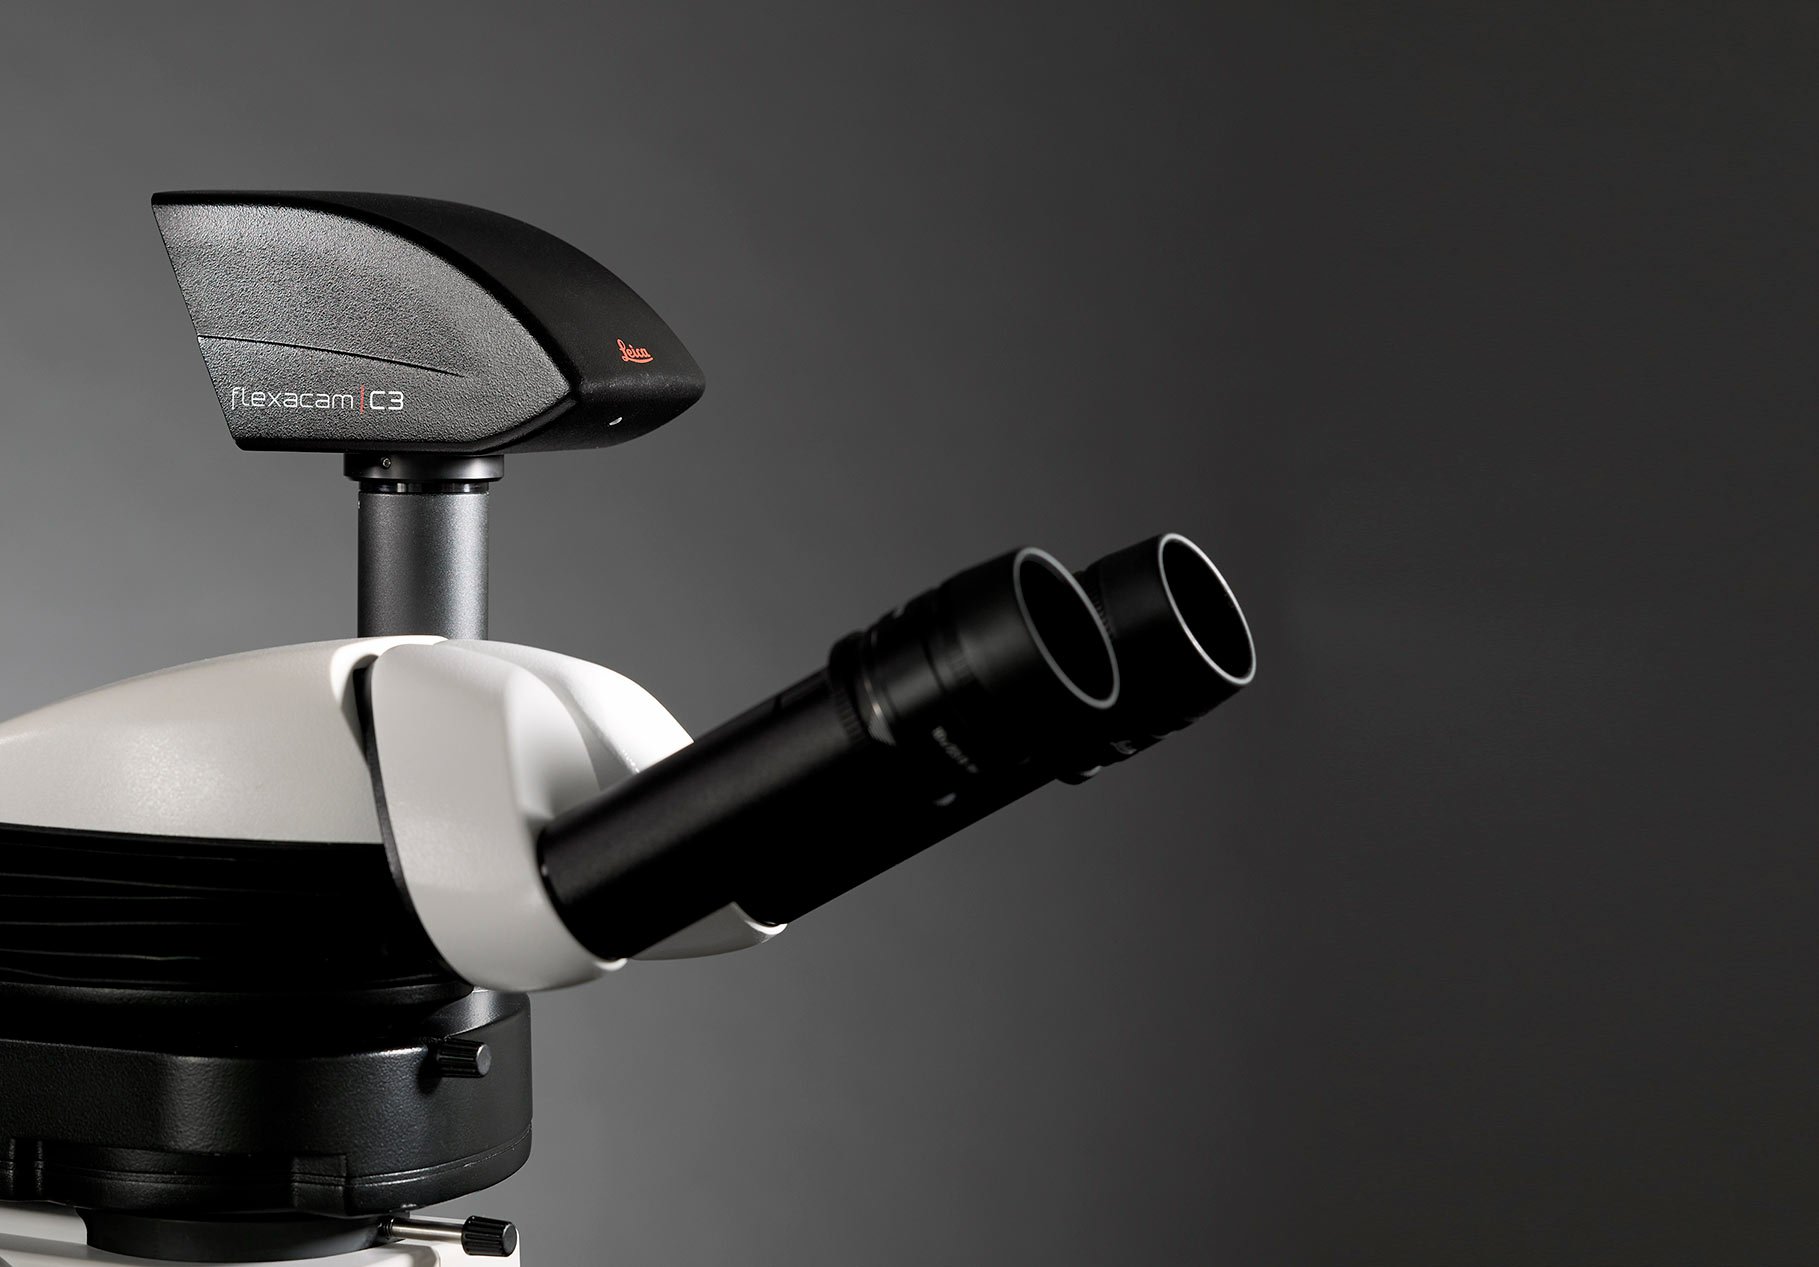 Kamera Leica Flexacam C3 Microscope - dibekalkan oleh IDM Instruments Australia